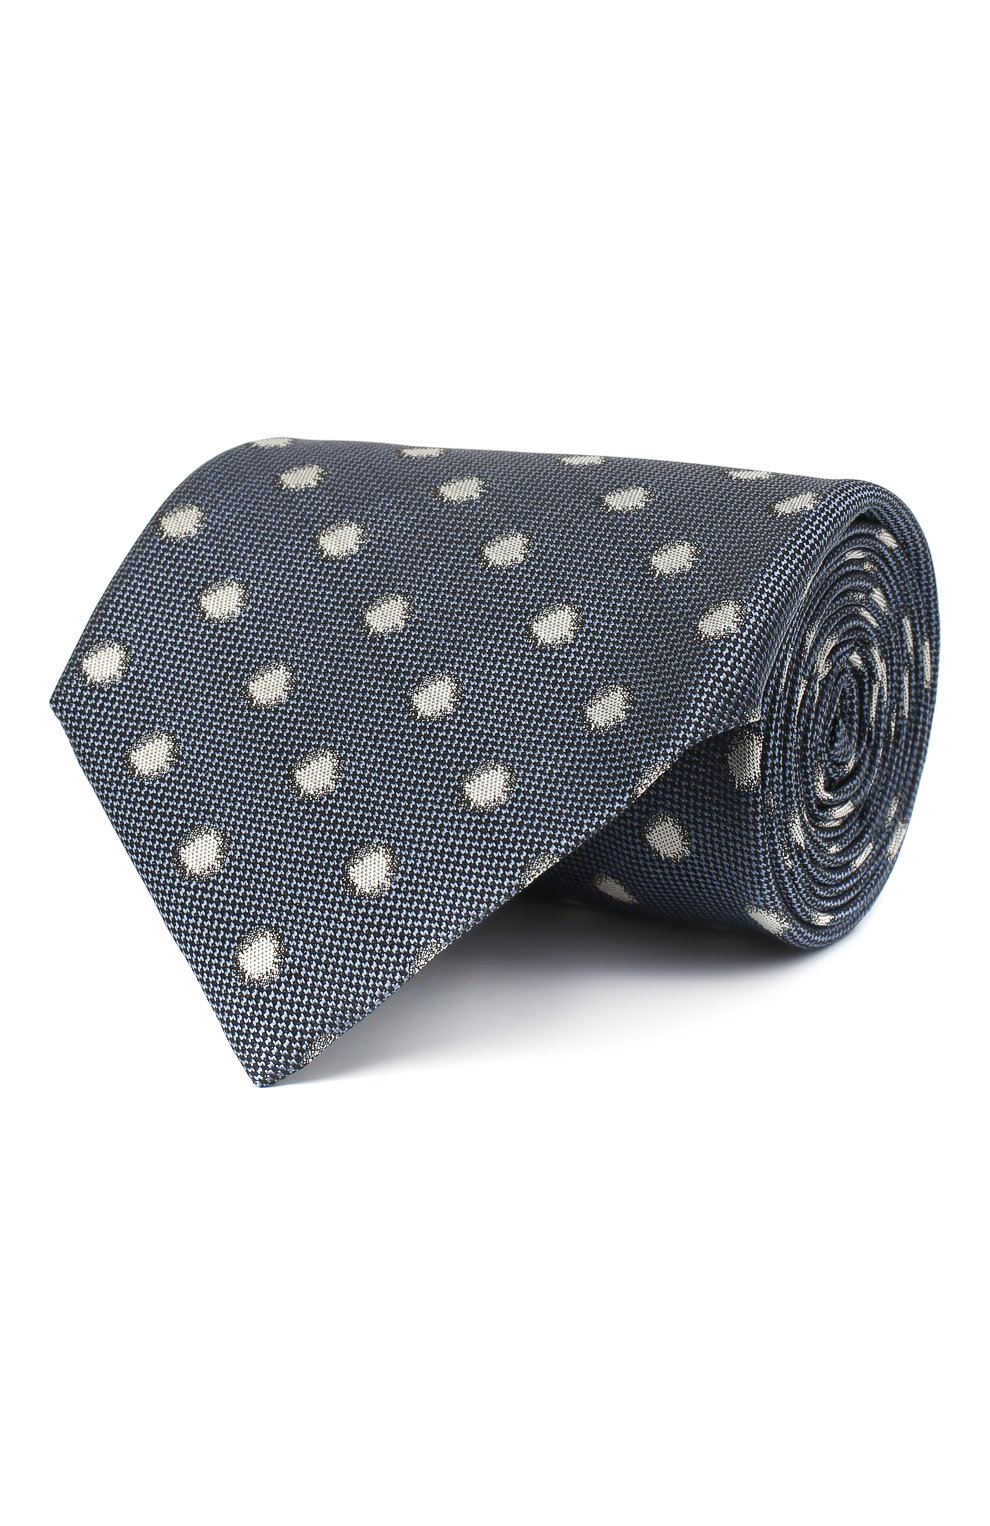 С принтом Tom Ford, Шелковый галстук Tom Ford, Италия, Синий, Шелк: 100%;, 11553285  - купить